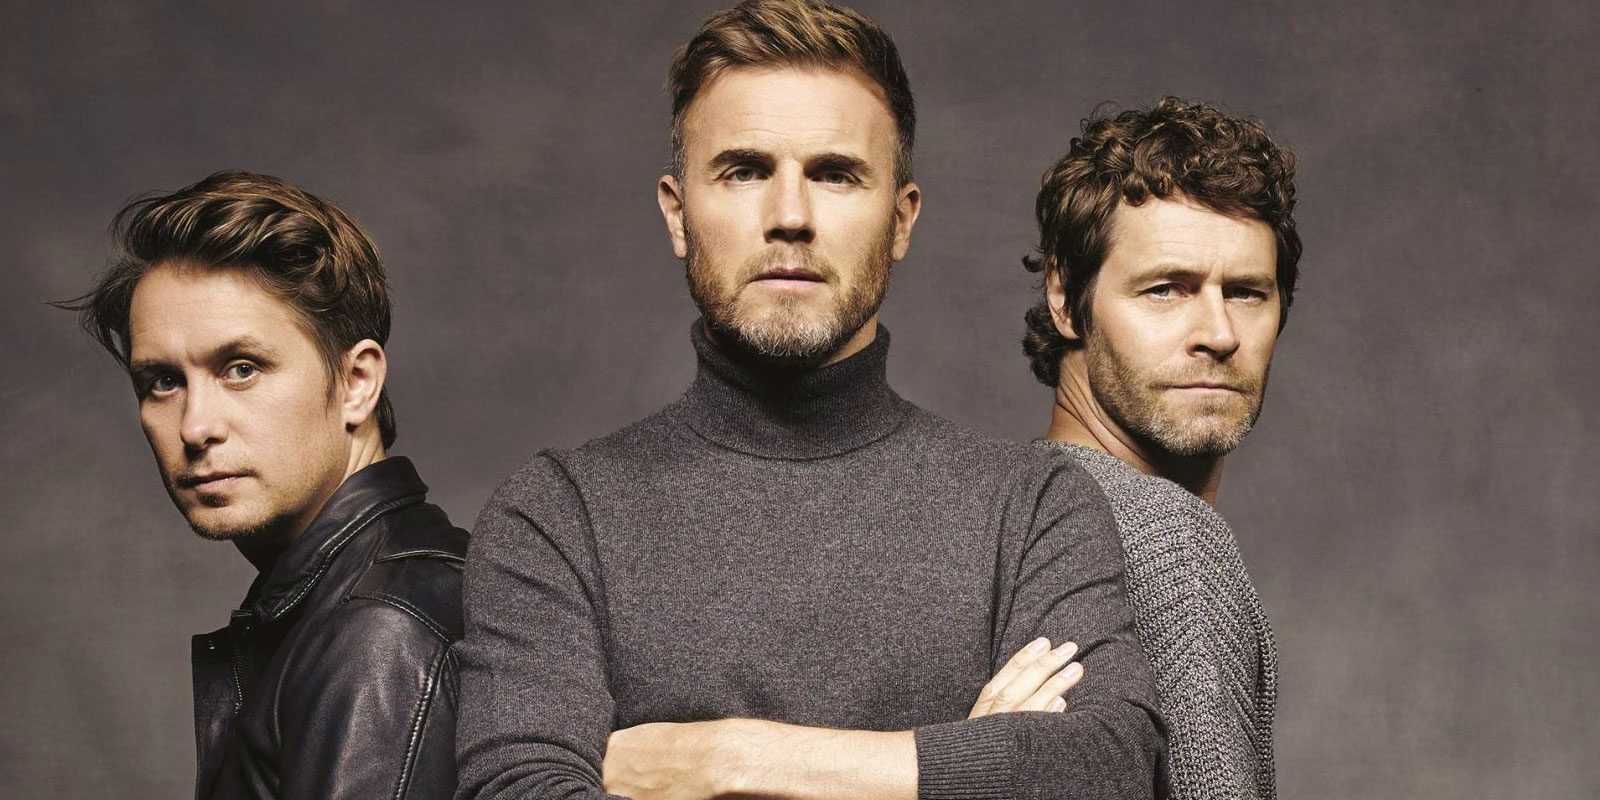 Un integrante del grupo Take That aparecerá en 'Star Wars: Los últimos jedi'